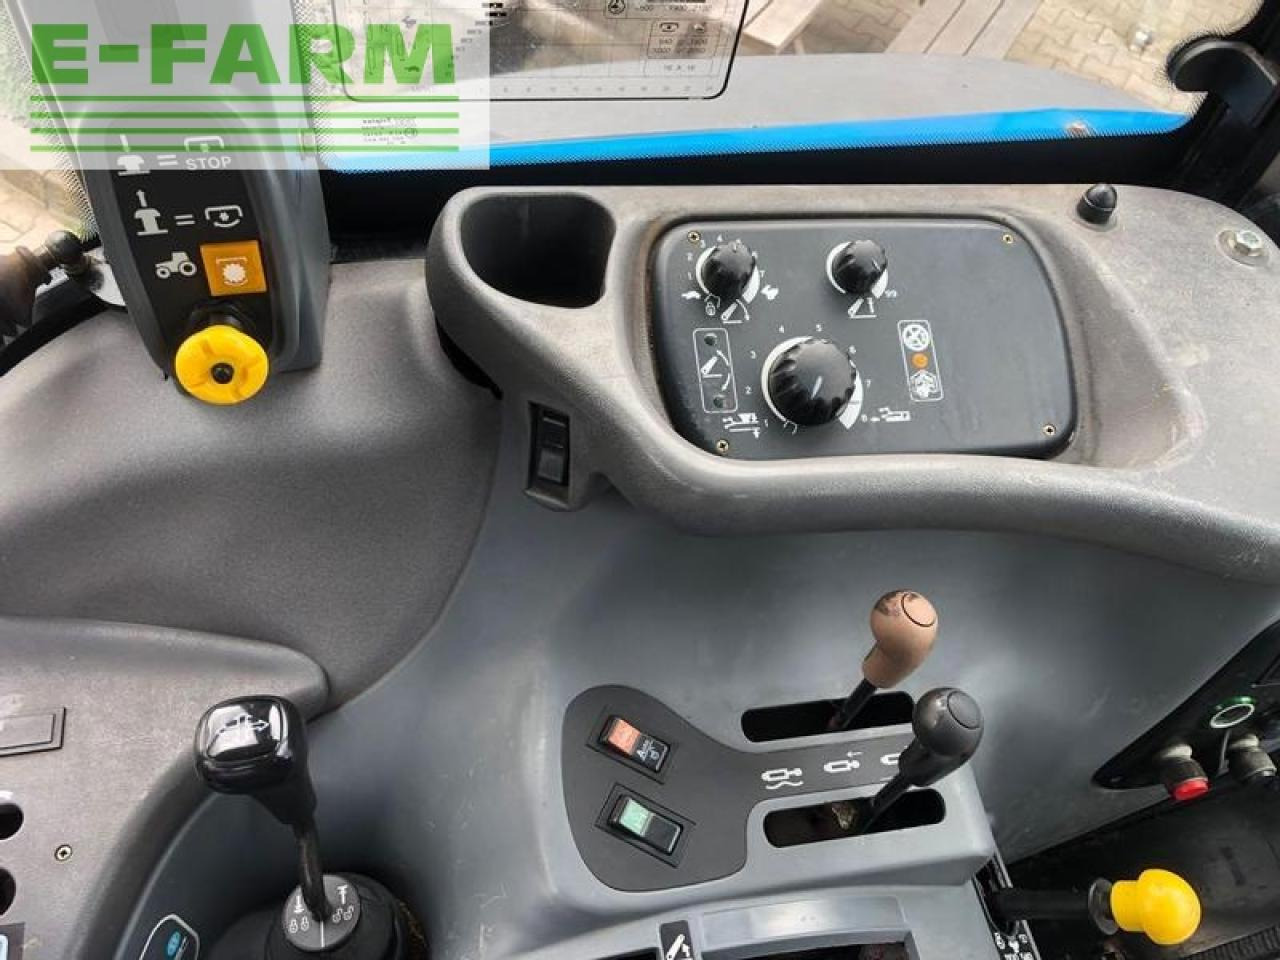 Farm tractor New Holland tsa 115: picture 12